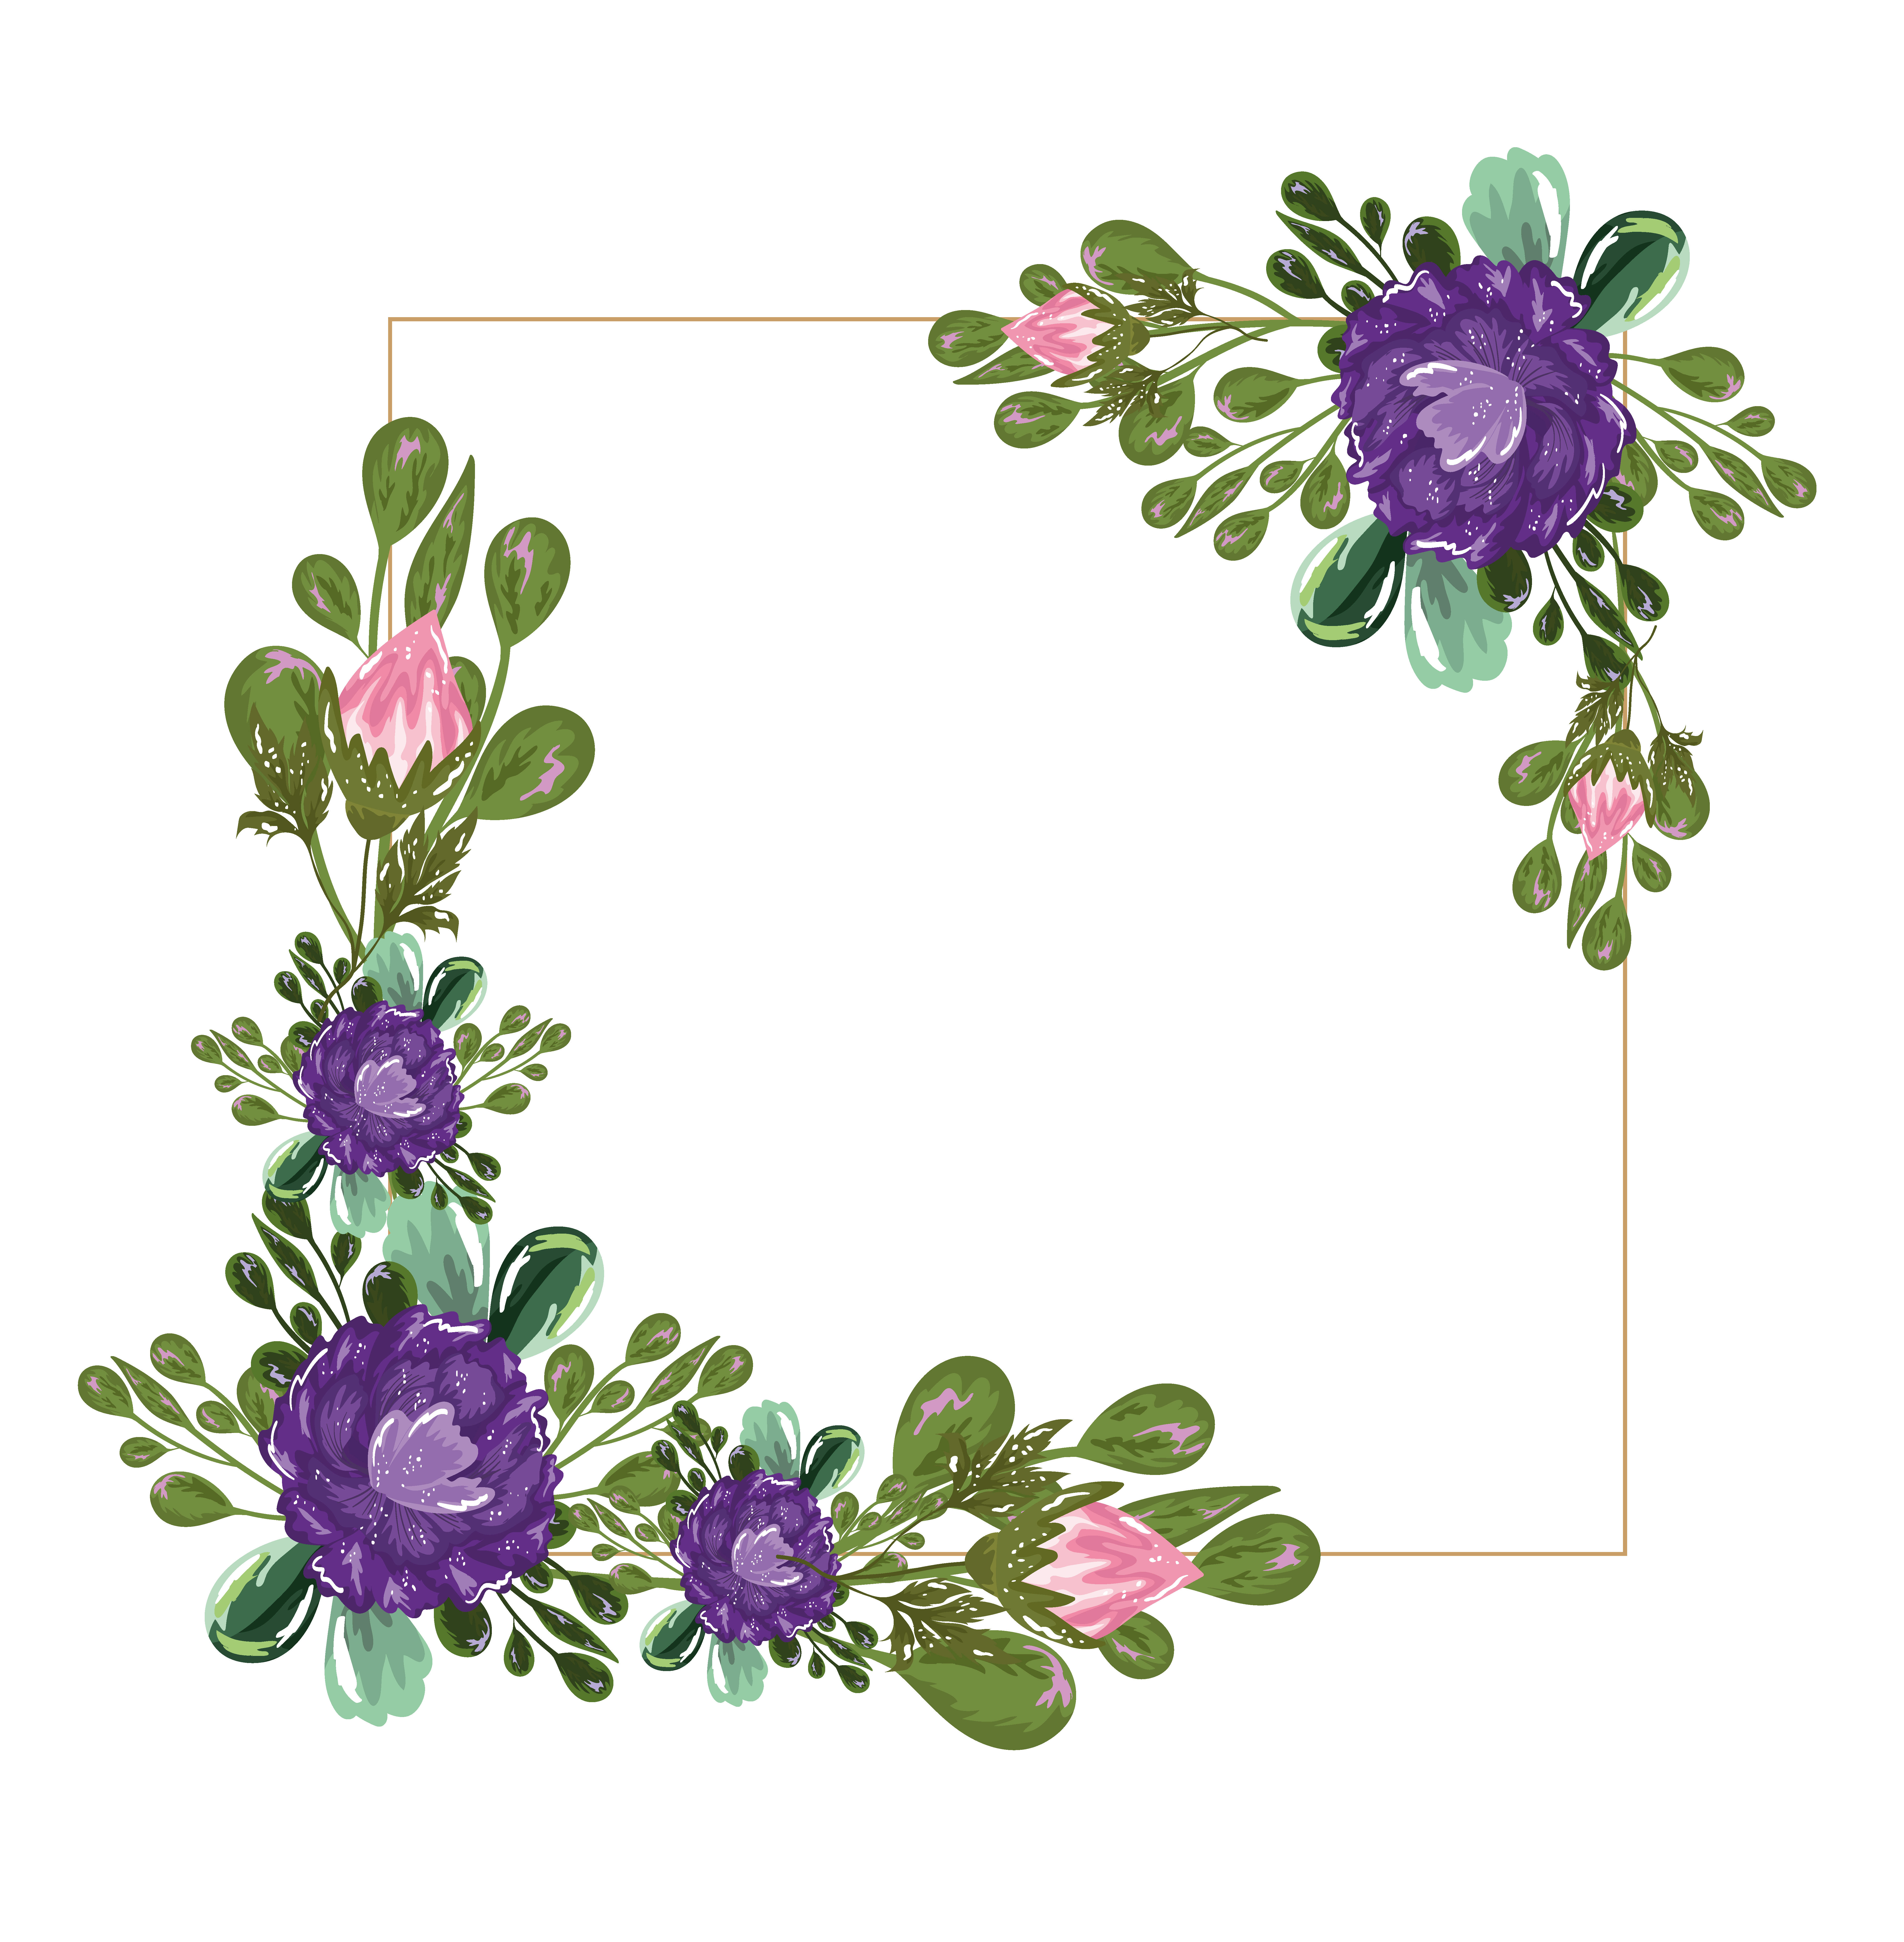 bordure de feuilles de nature florale de fleurs violettes, conception de  peinture 3746706 - Telecharger Vectoriel Gratuit, Clipart Graphique,  Vecteur Dessins et Pictogramme Gratuit